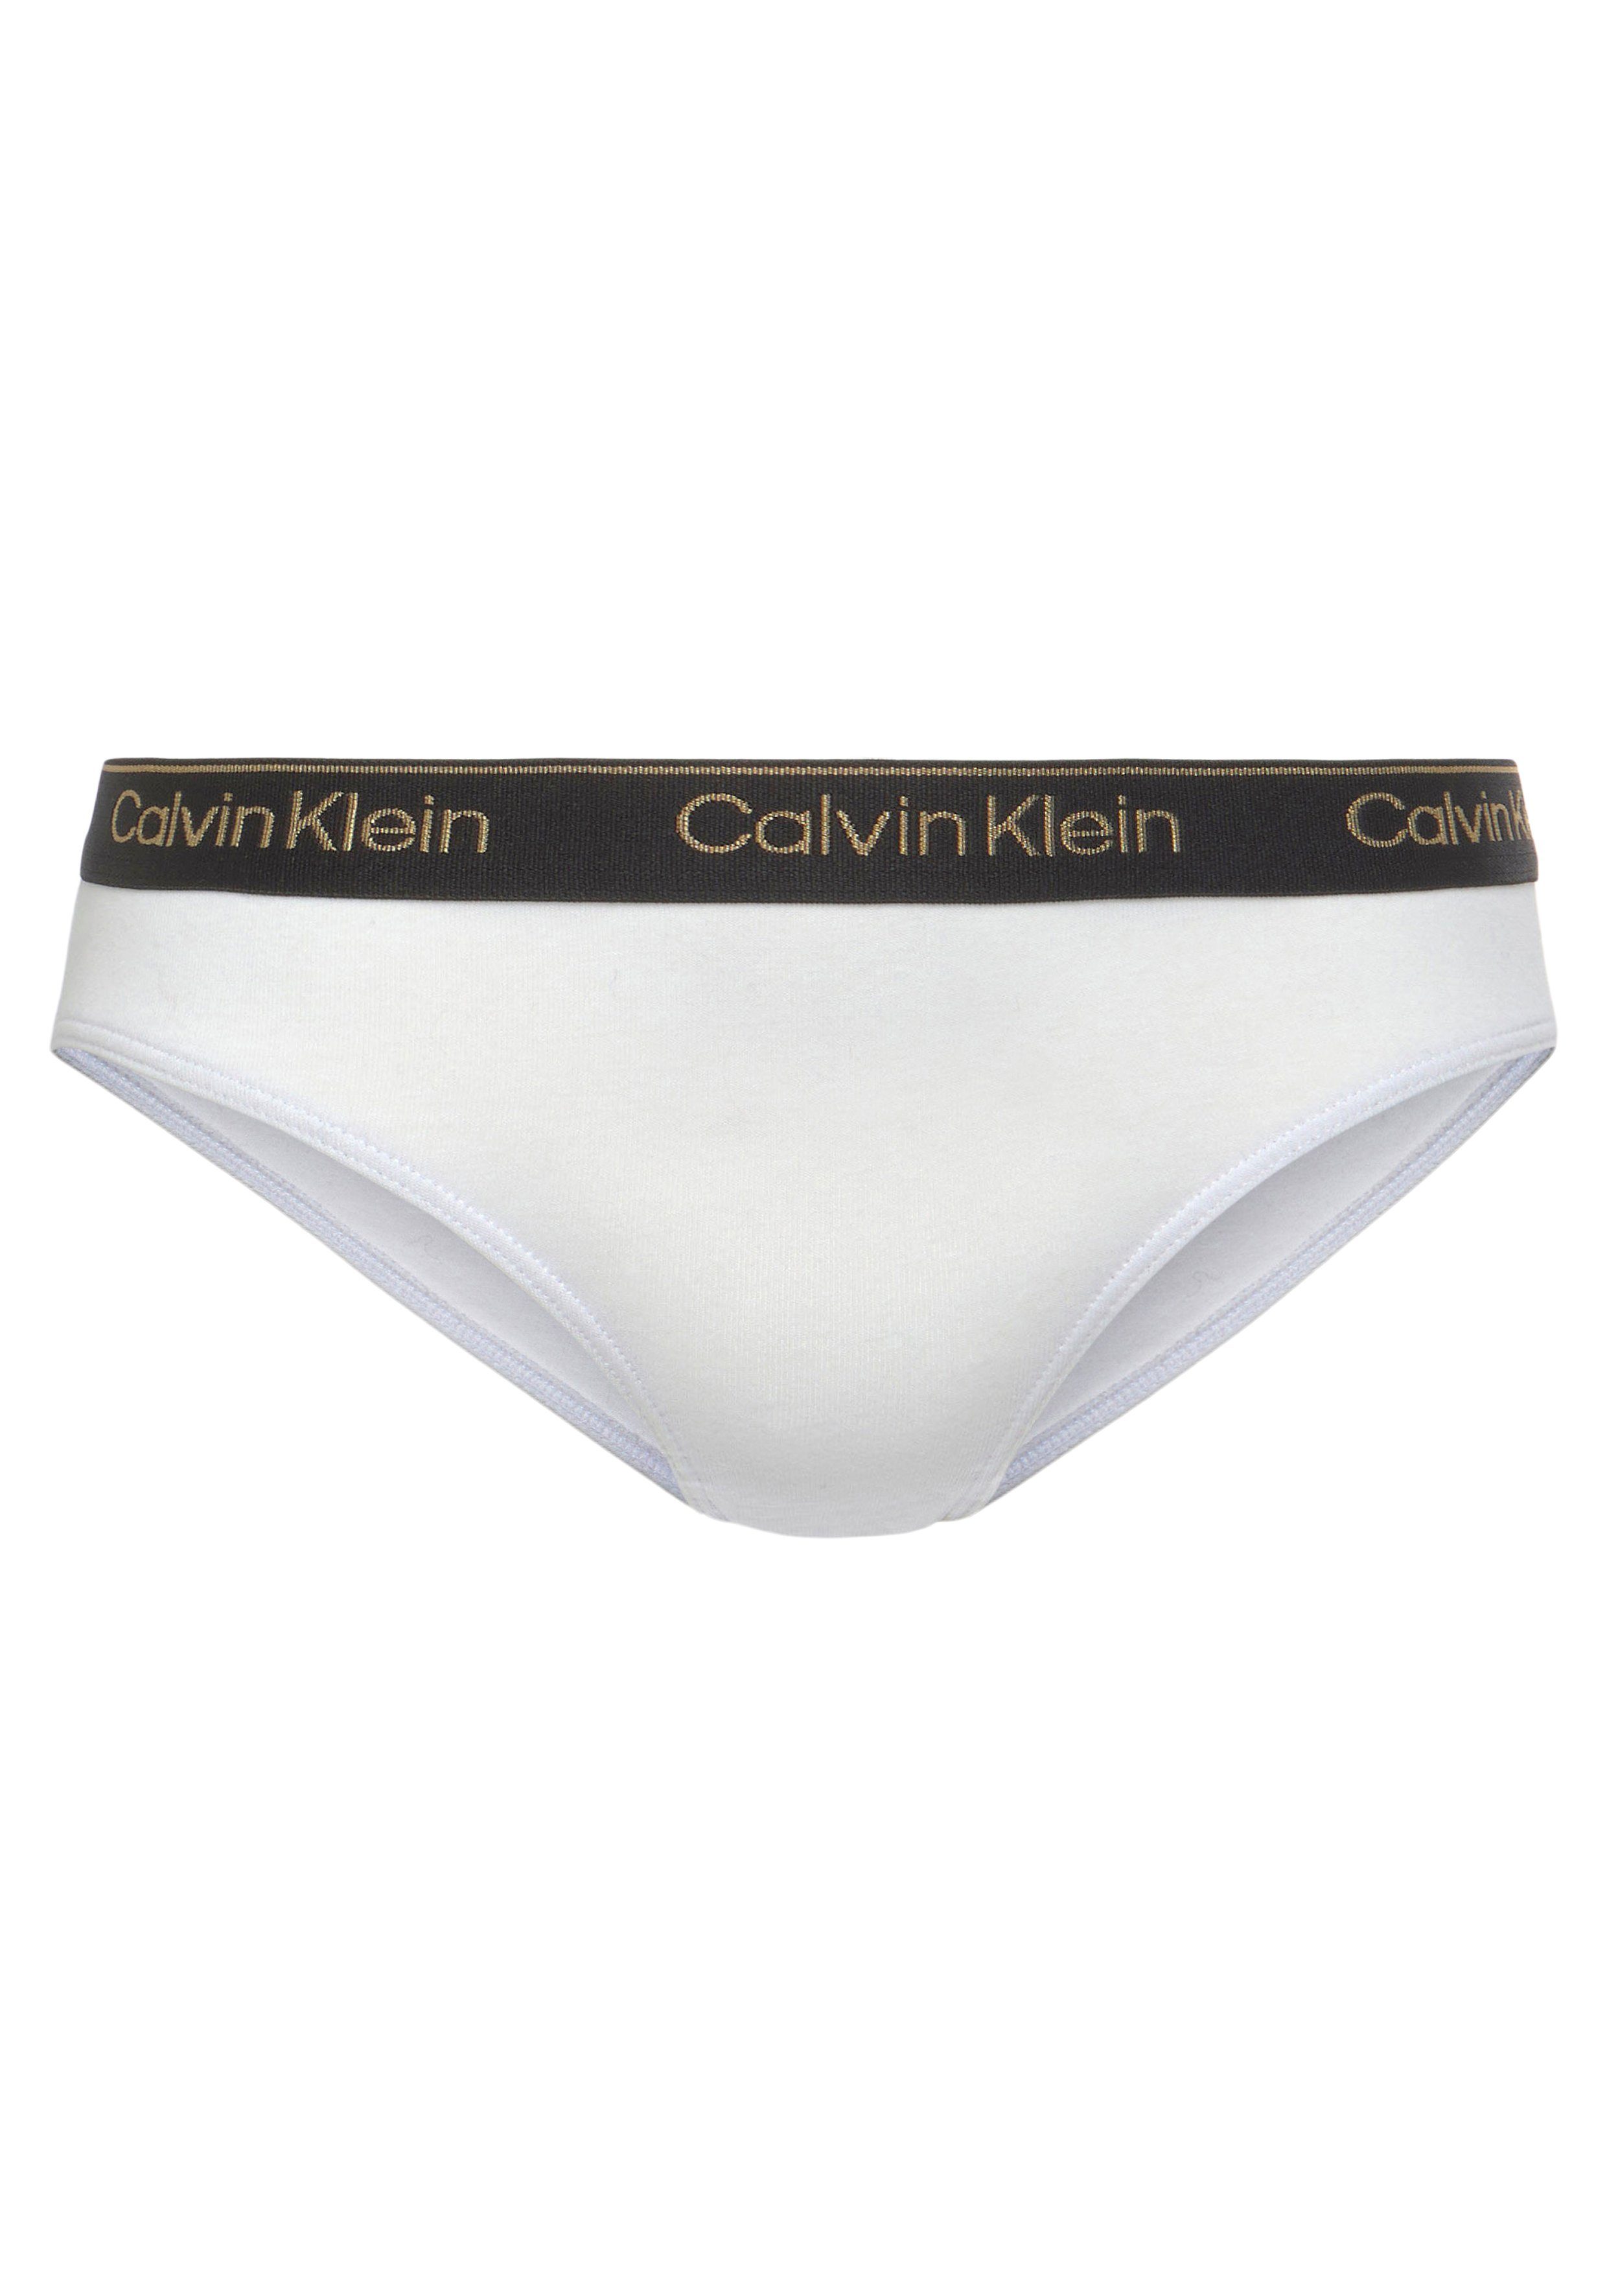 5er-Pack) Klein Calvin 5-St., Underwear Elastikbund mit Aop/Rglare/Spink/Pwhite/Pblack (Packung, BIKINI 5PK sportlichem Bikinislip